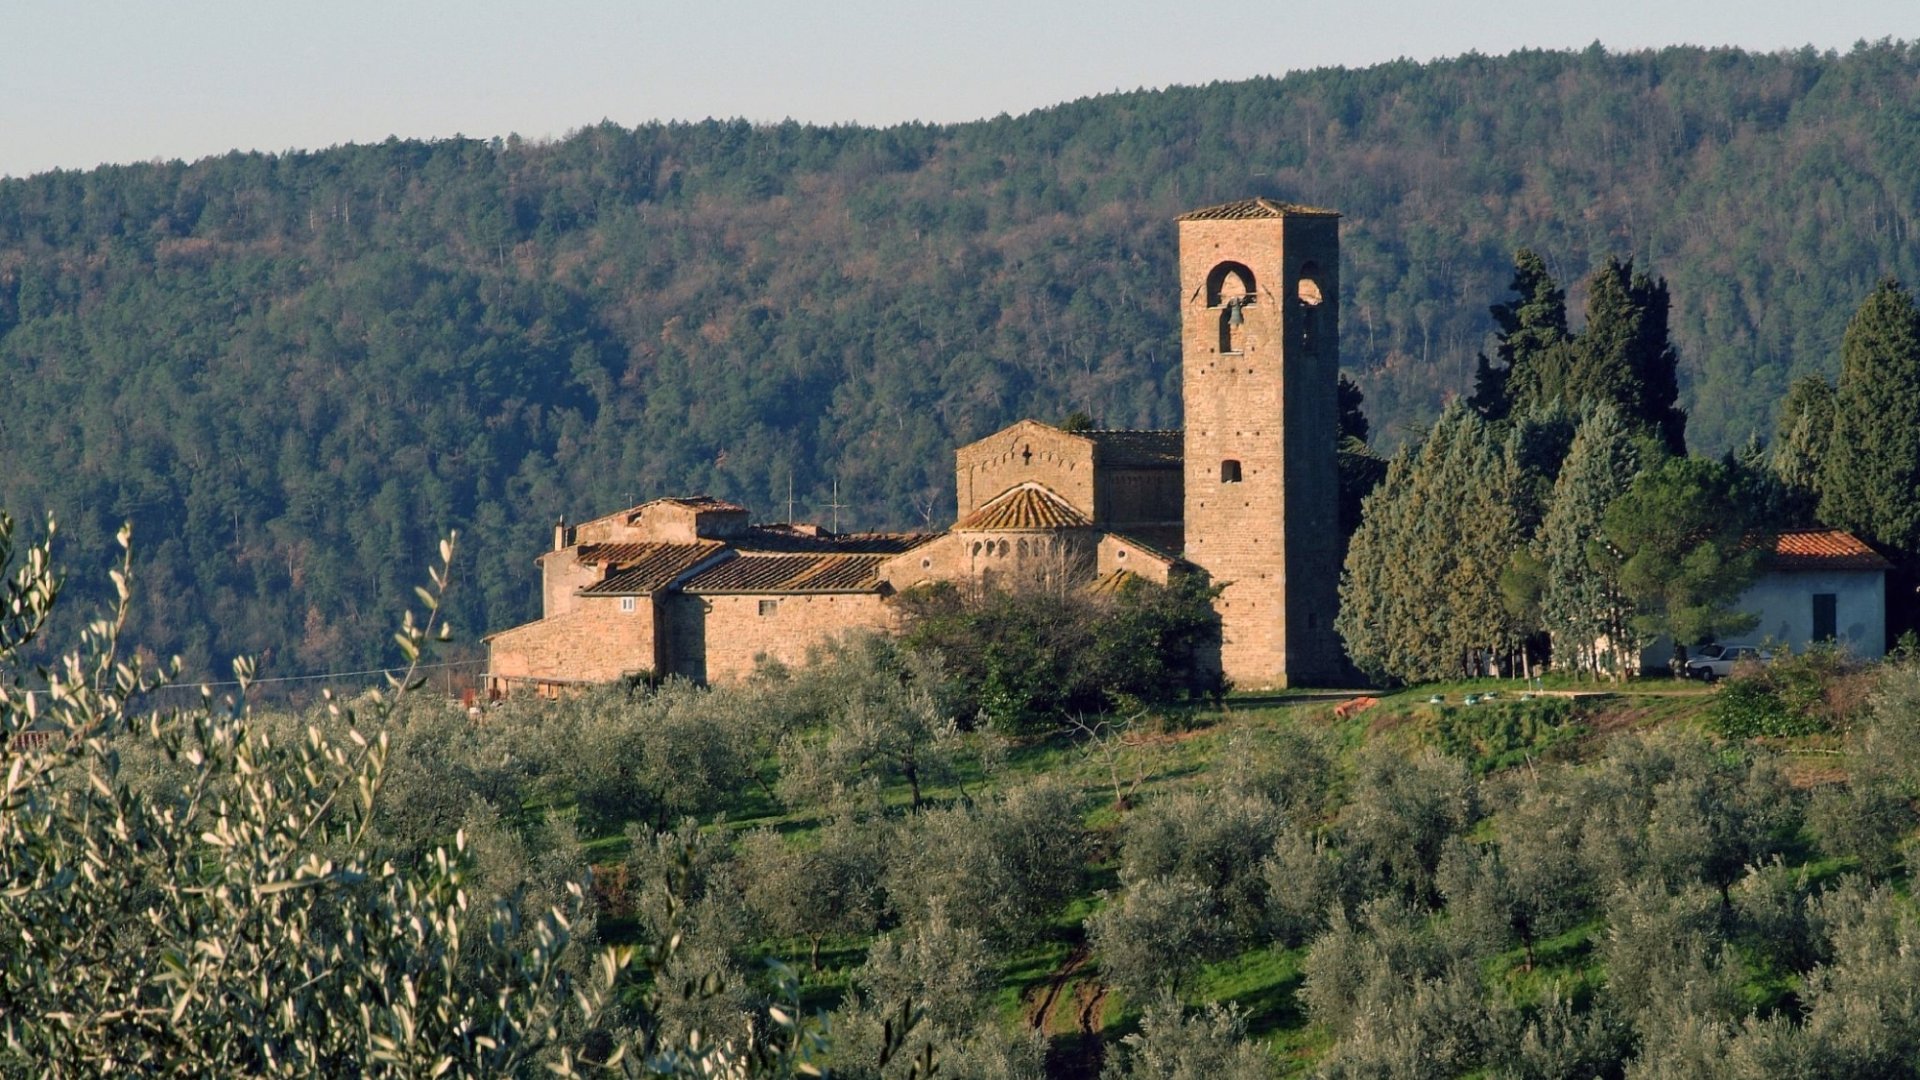 San Leonardo parish church in Artimino